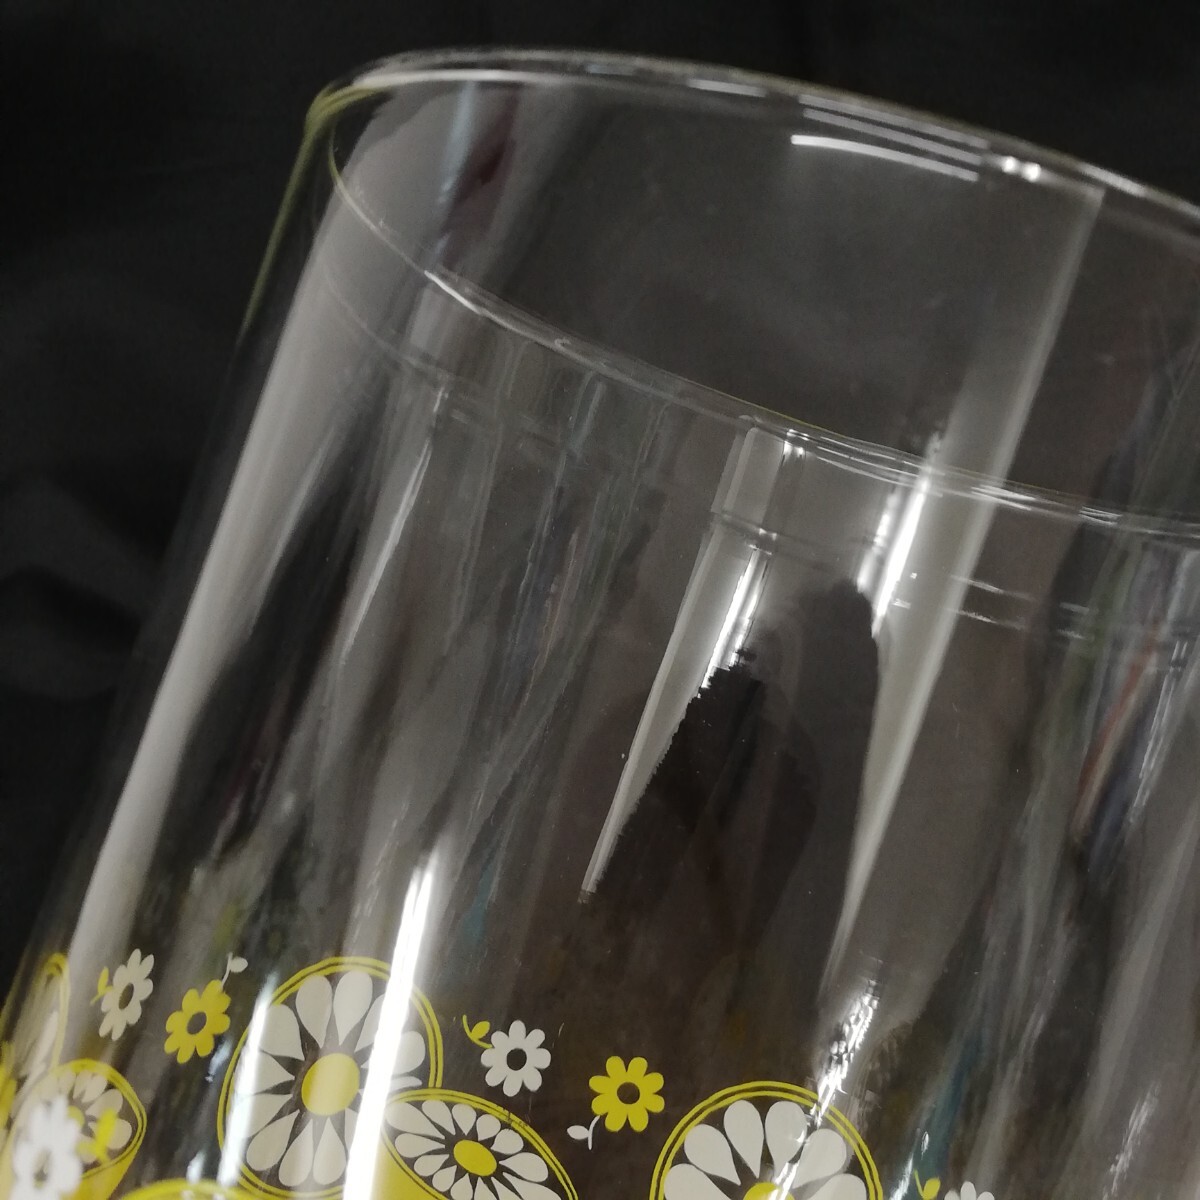 48 東洋佐々木ガラス レモン柄 デキャンタ グラス ガラス製 昭和レトロ レトロポップ 特大 タンブラー コップ ガラス 高さ約16cm 径約9.5cm_画像6